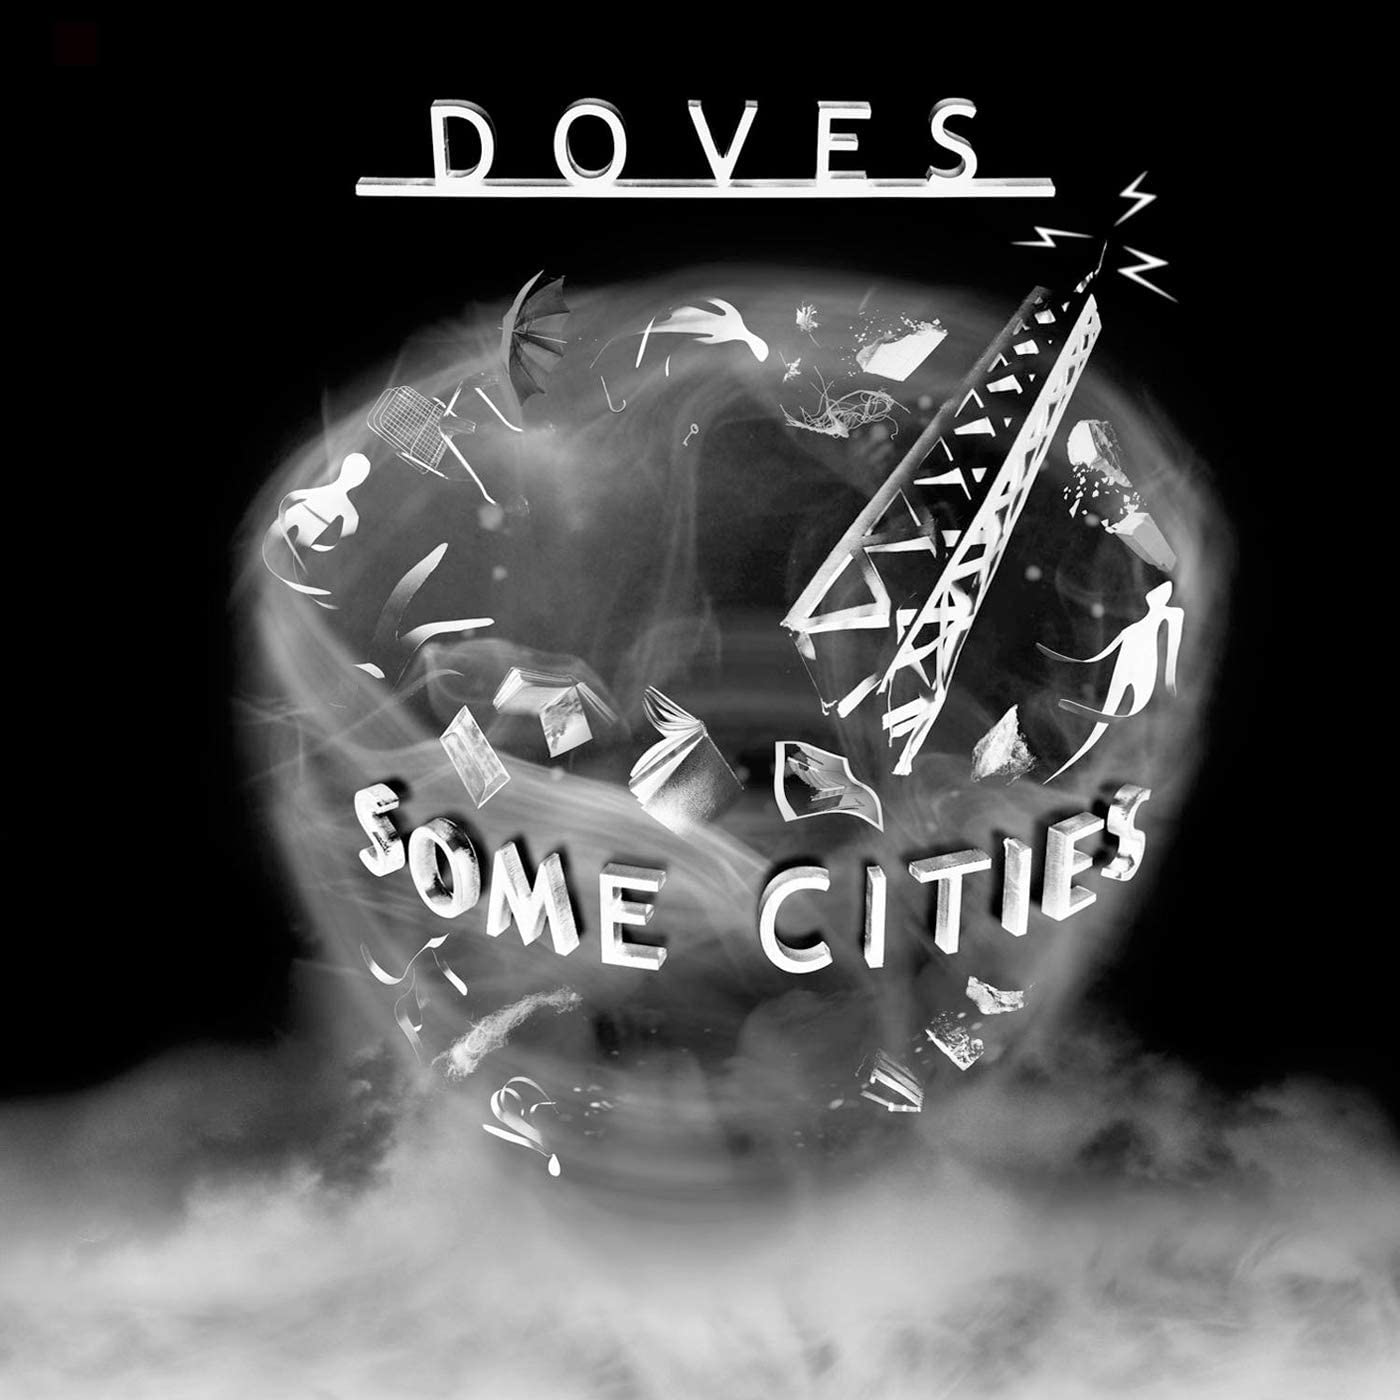 Dove Some Cities LTD - Ireland Vinyl